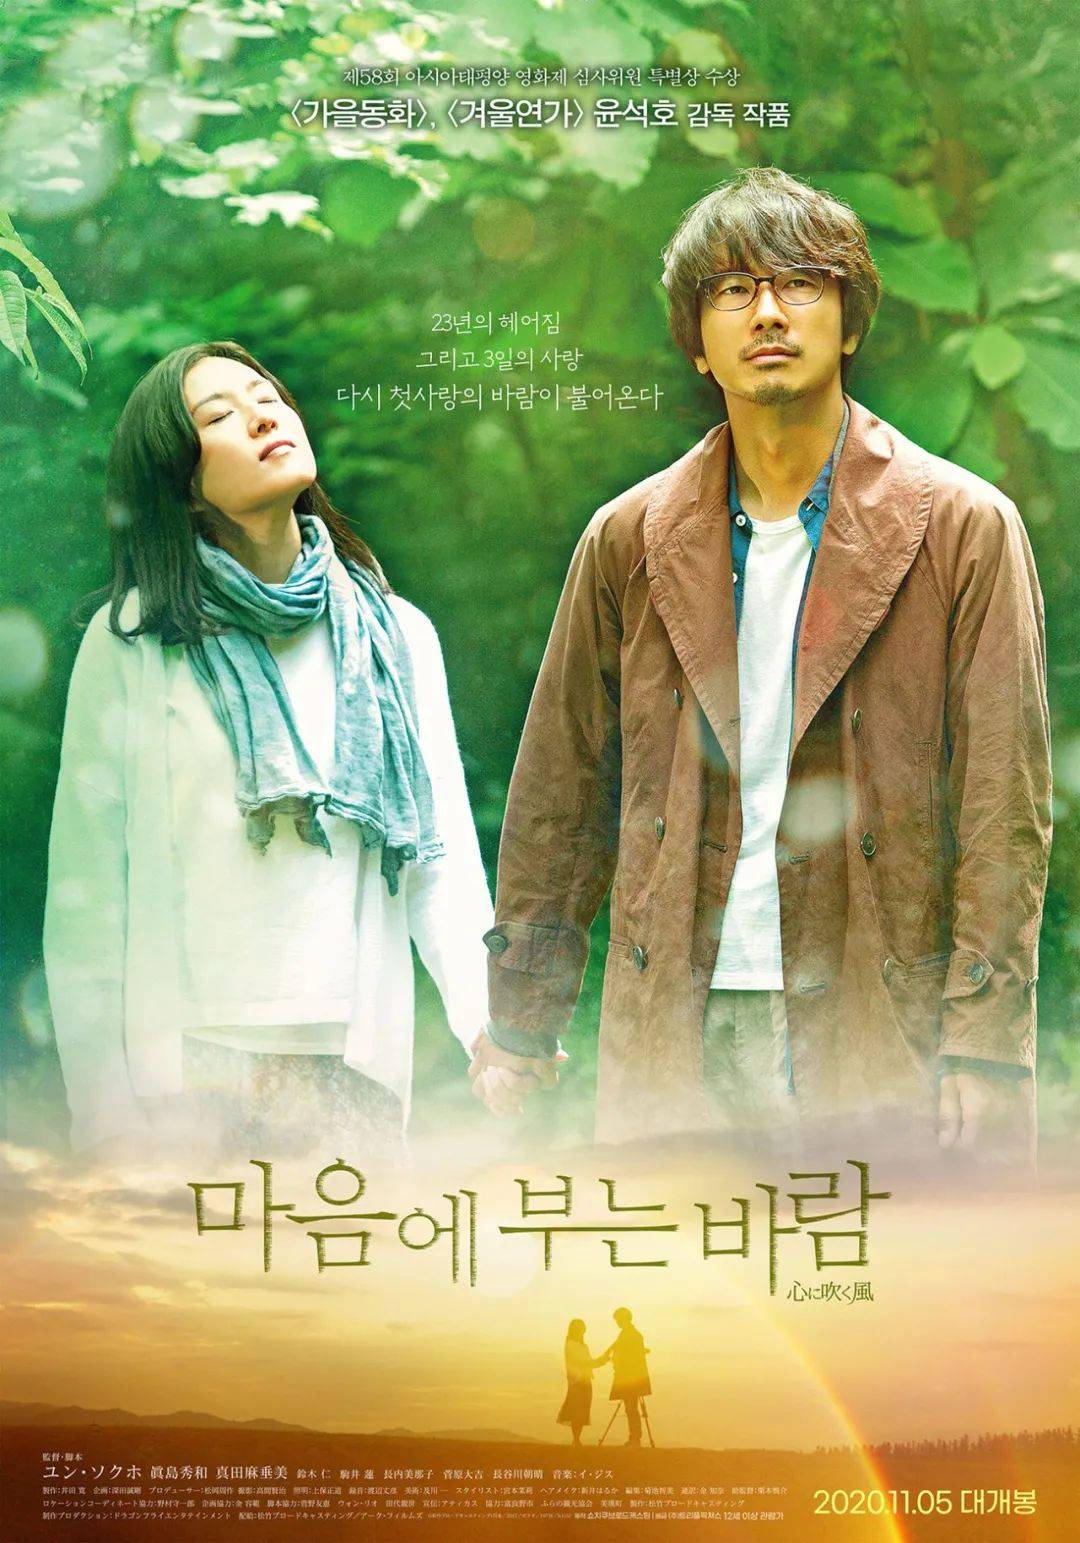 《蓝色生死恋》尹锡湖导演的首部电影《风吹心头》将于11月上映